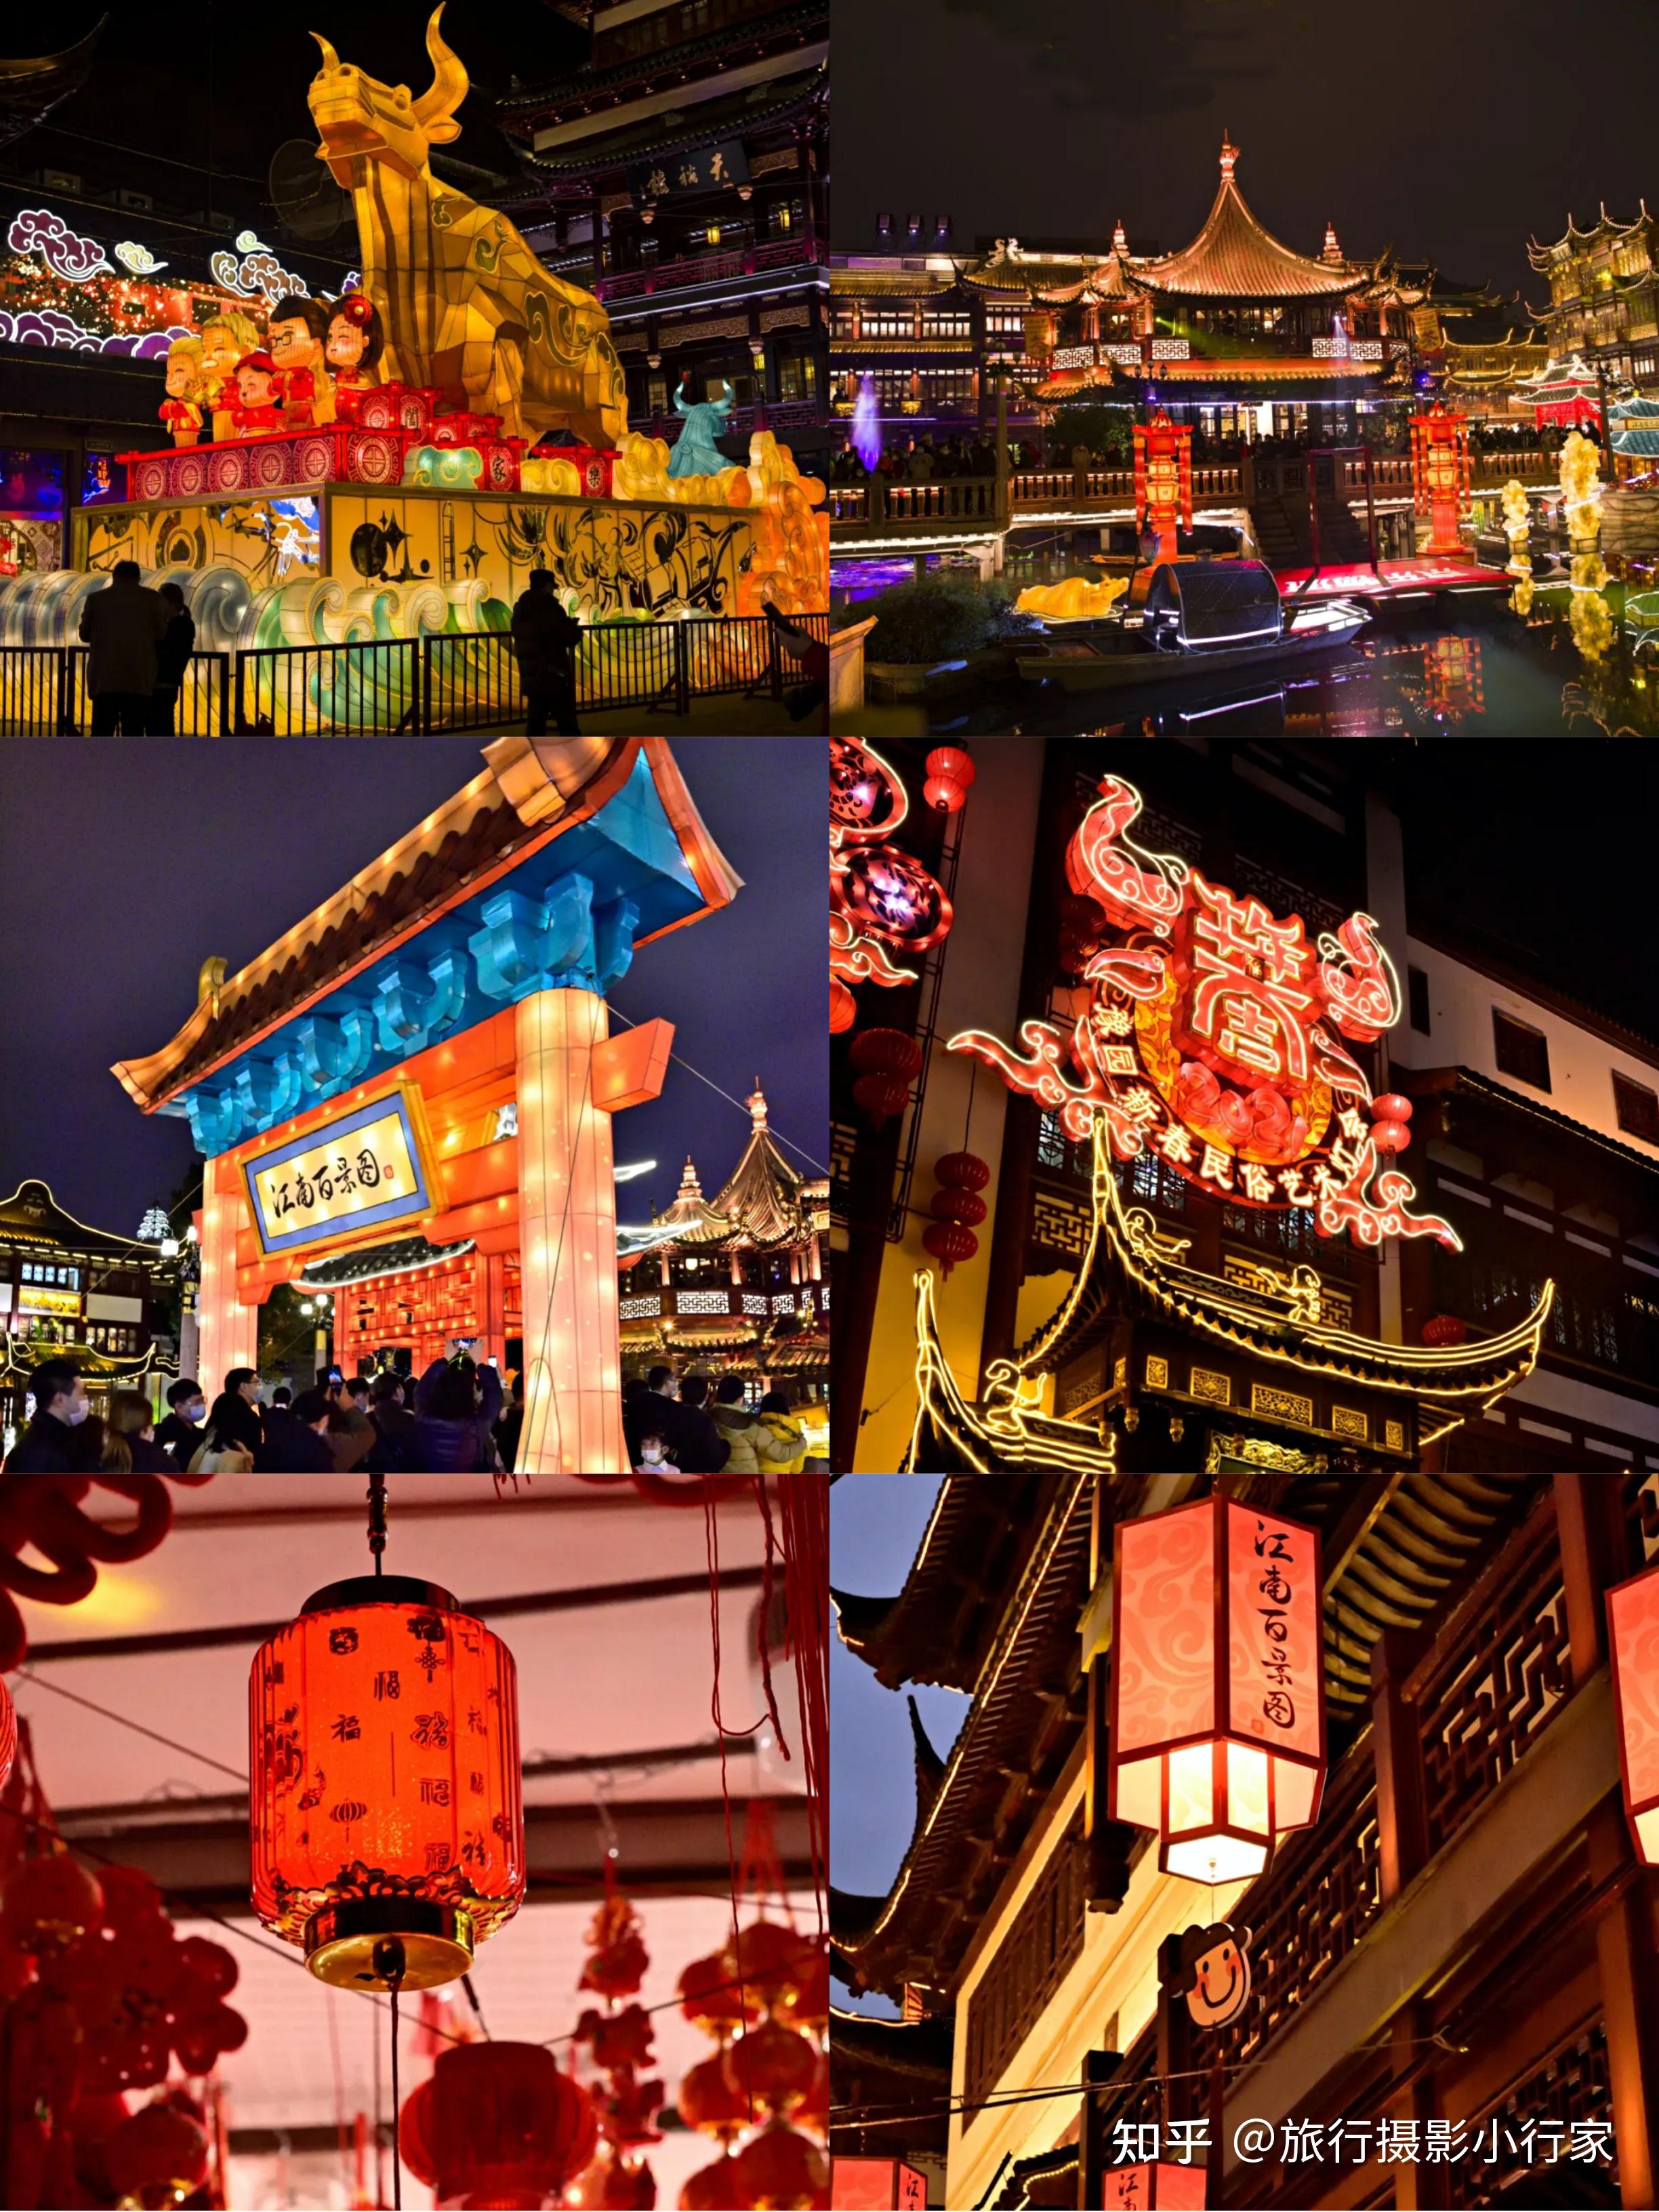 7天吸金177亿 上海春节人均旅游消费额全国第一-新旅界